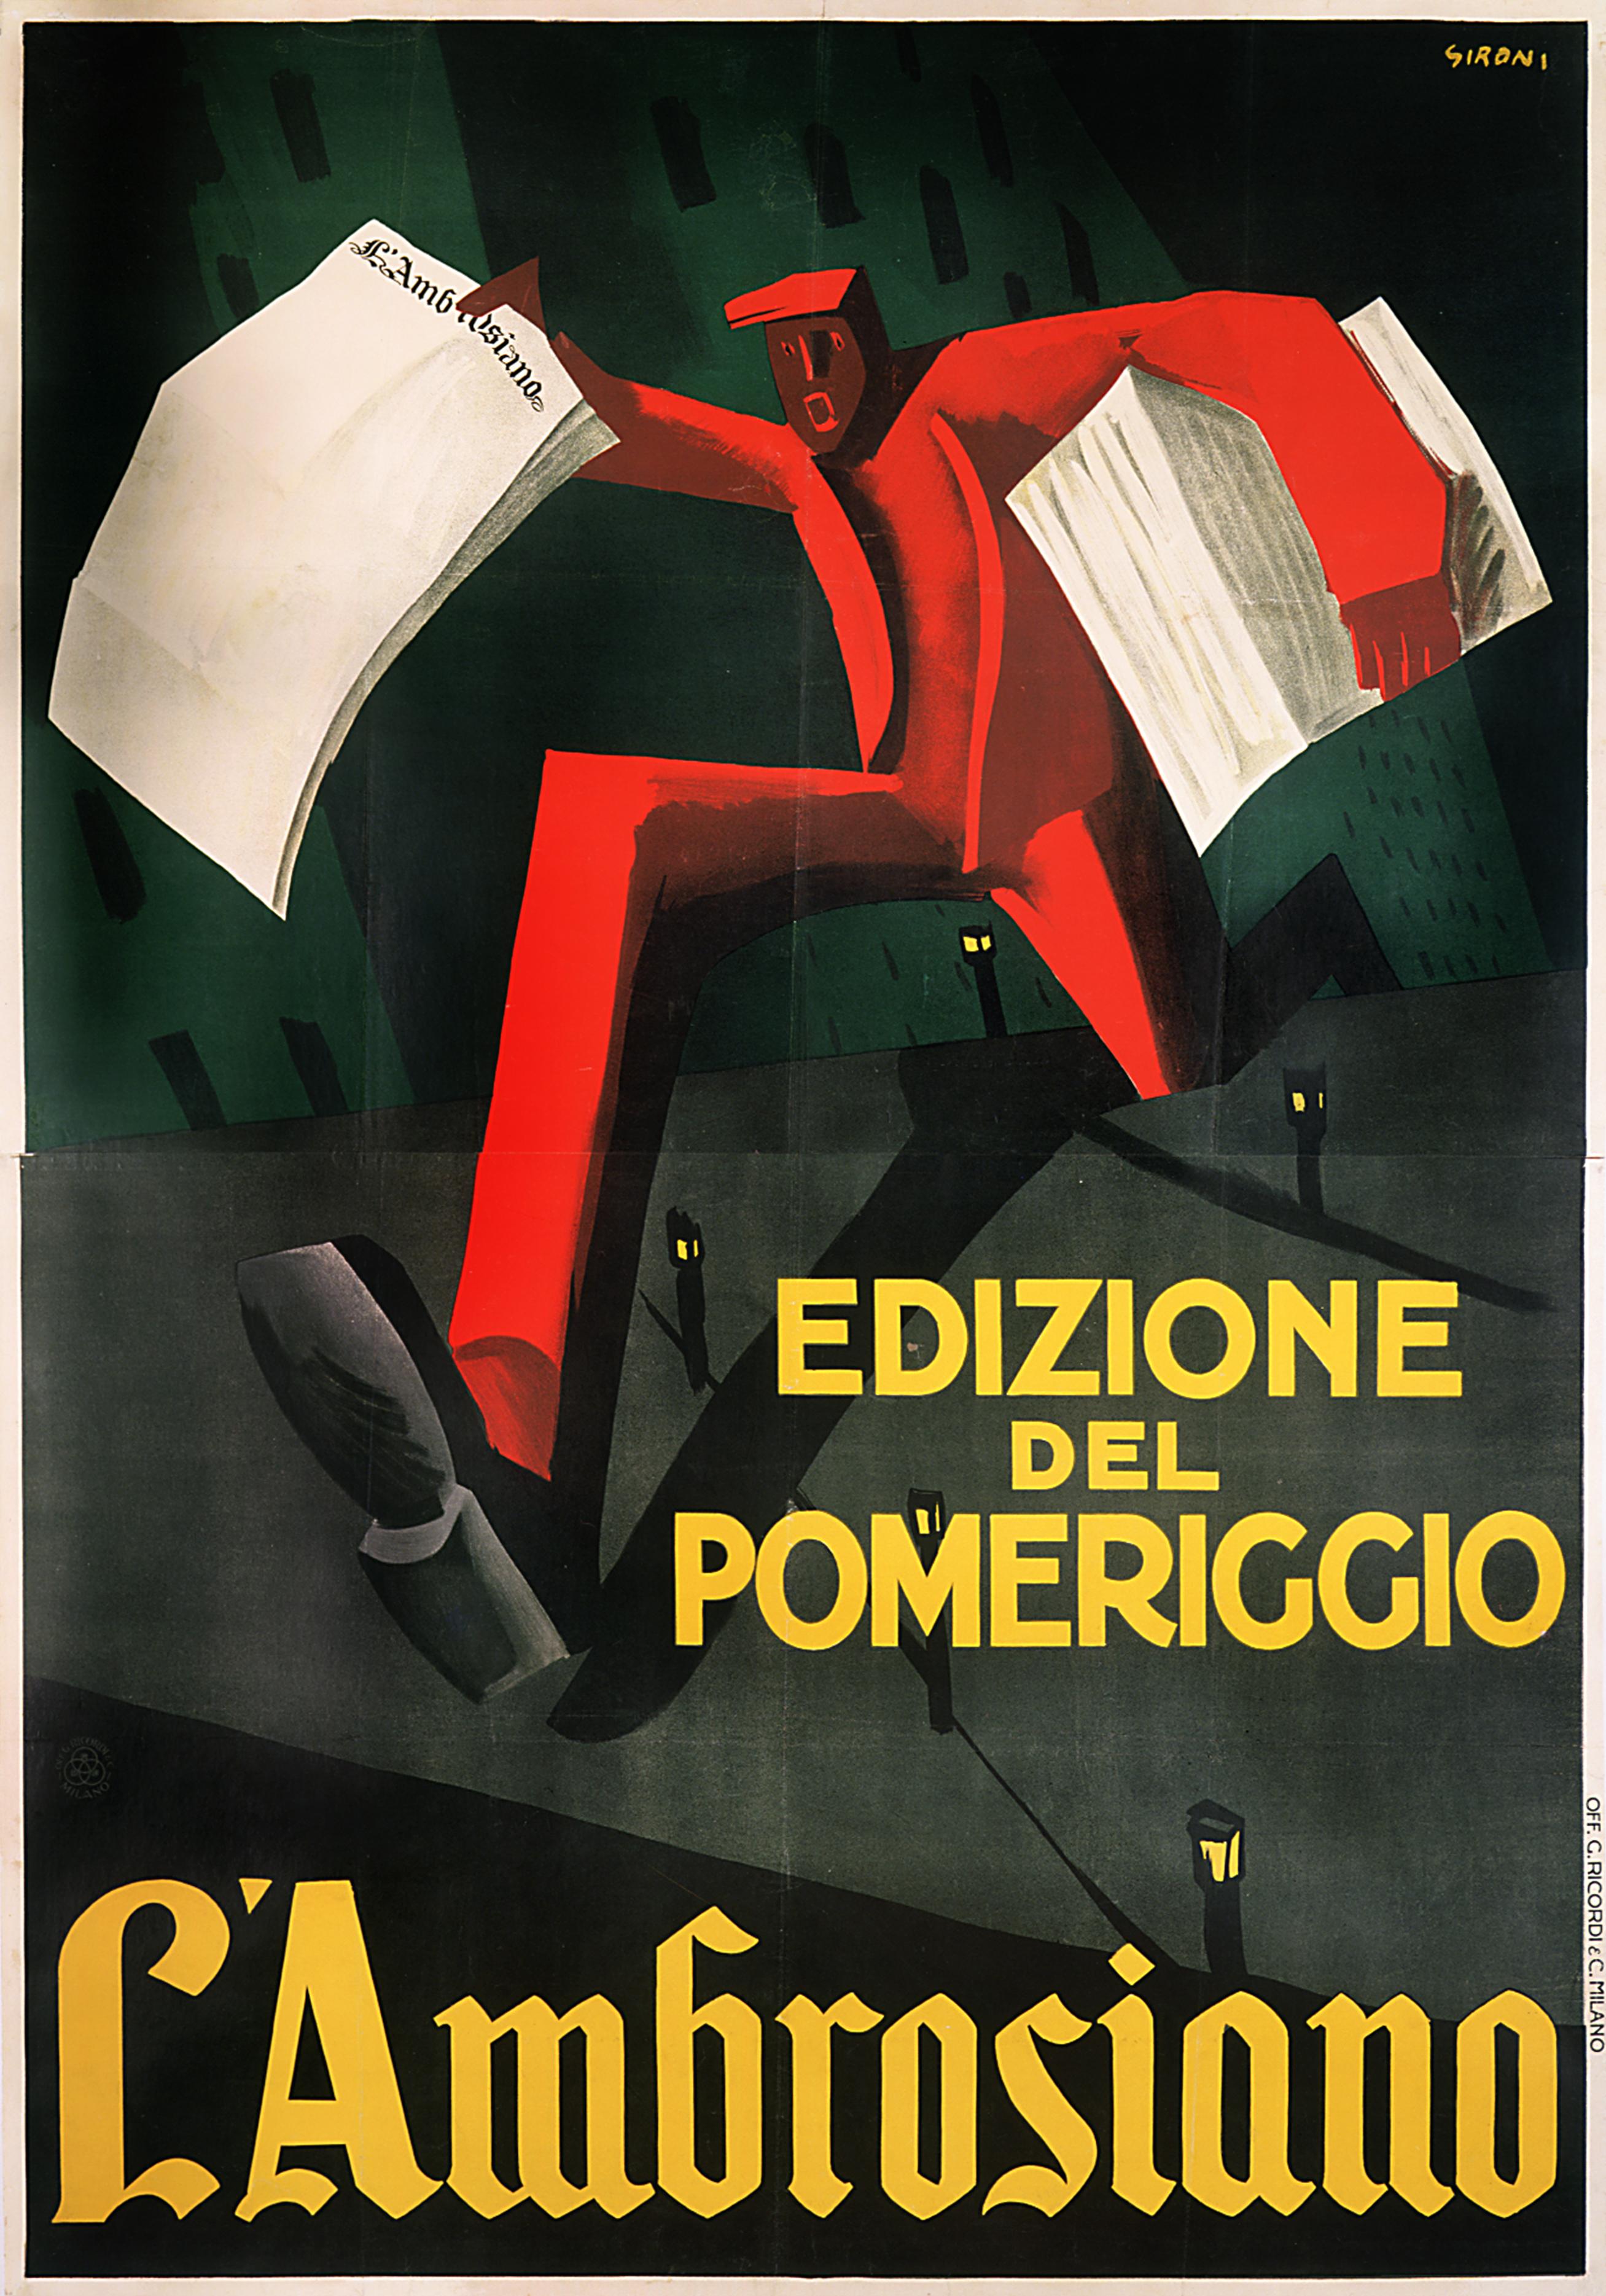 "L'Ambrosiano Edizione del Pomeriggio" Original Vintage Futurist Poster - Print by Mario Sironi